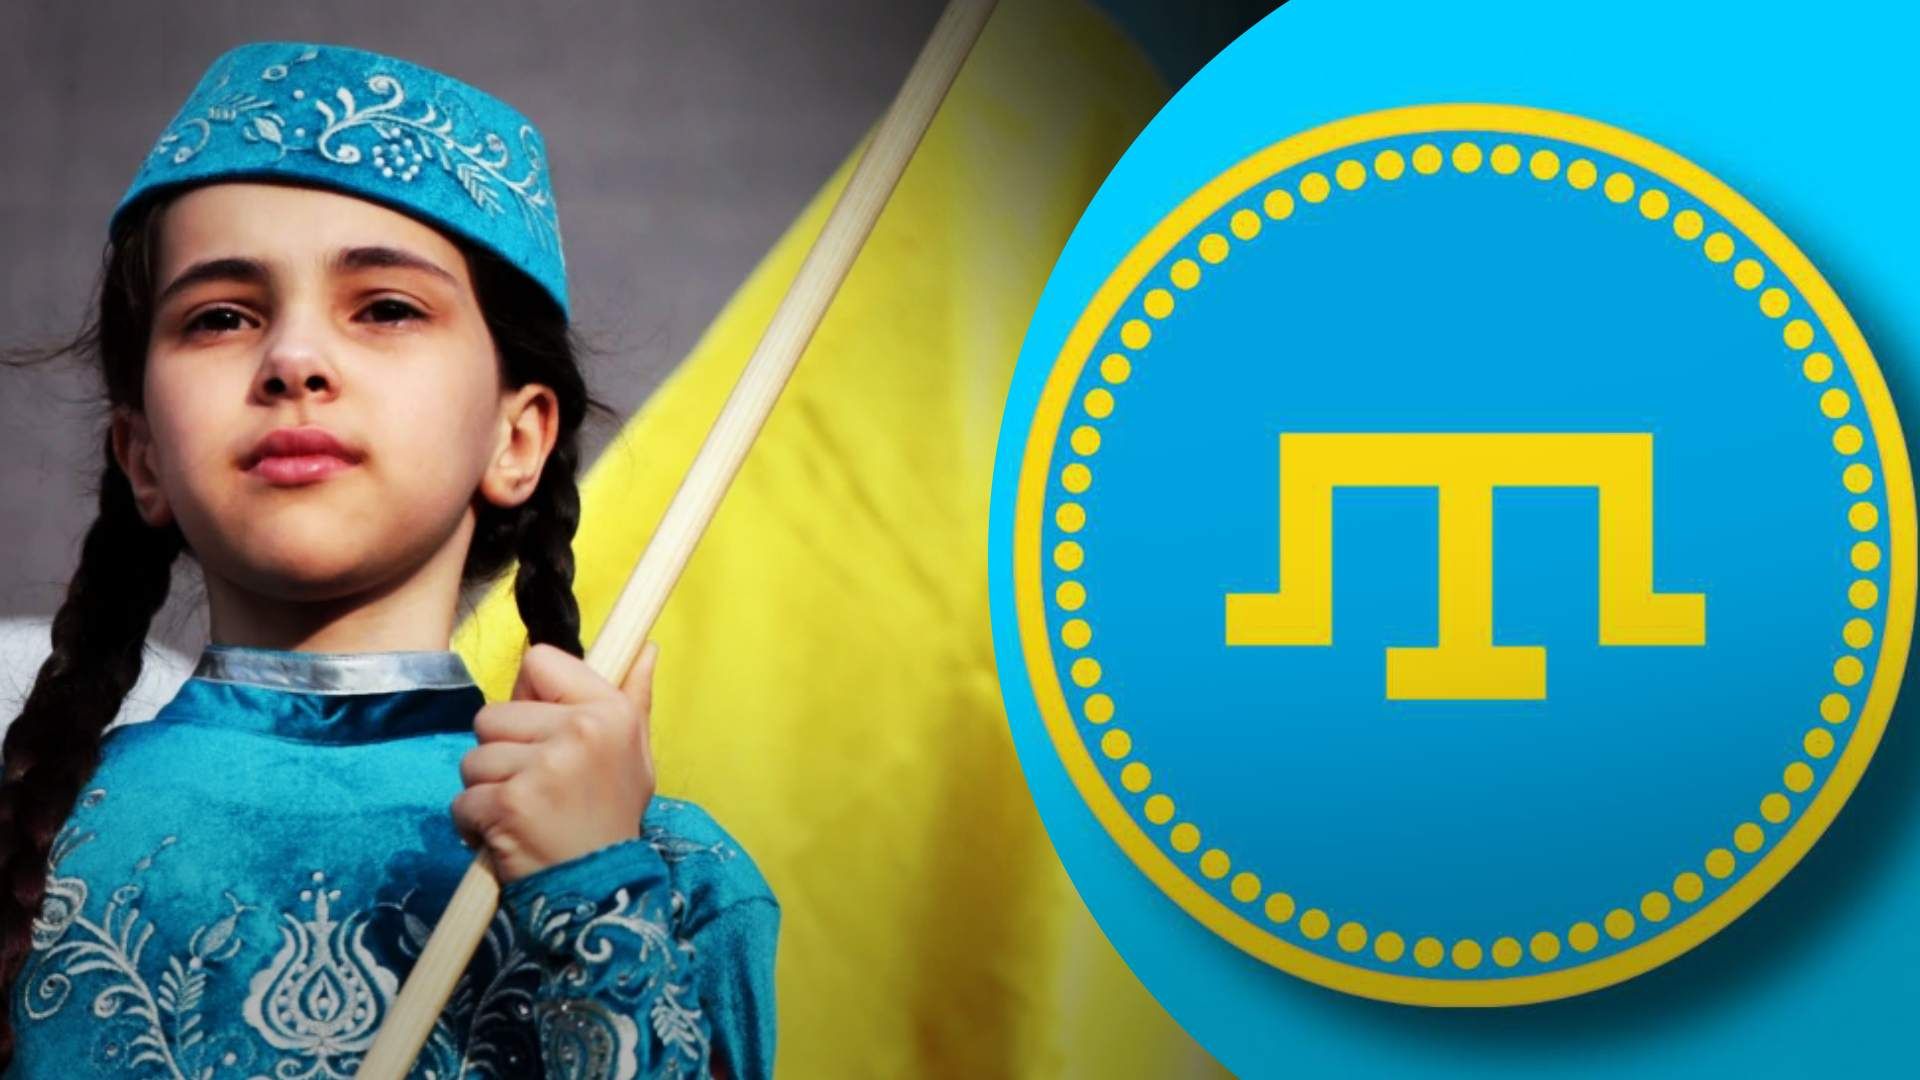 Правительство создало Национальную комиссию по вопросам крымскотатарского языка